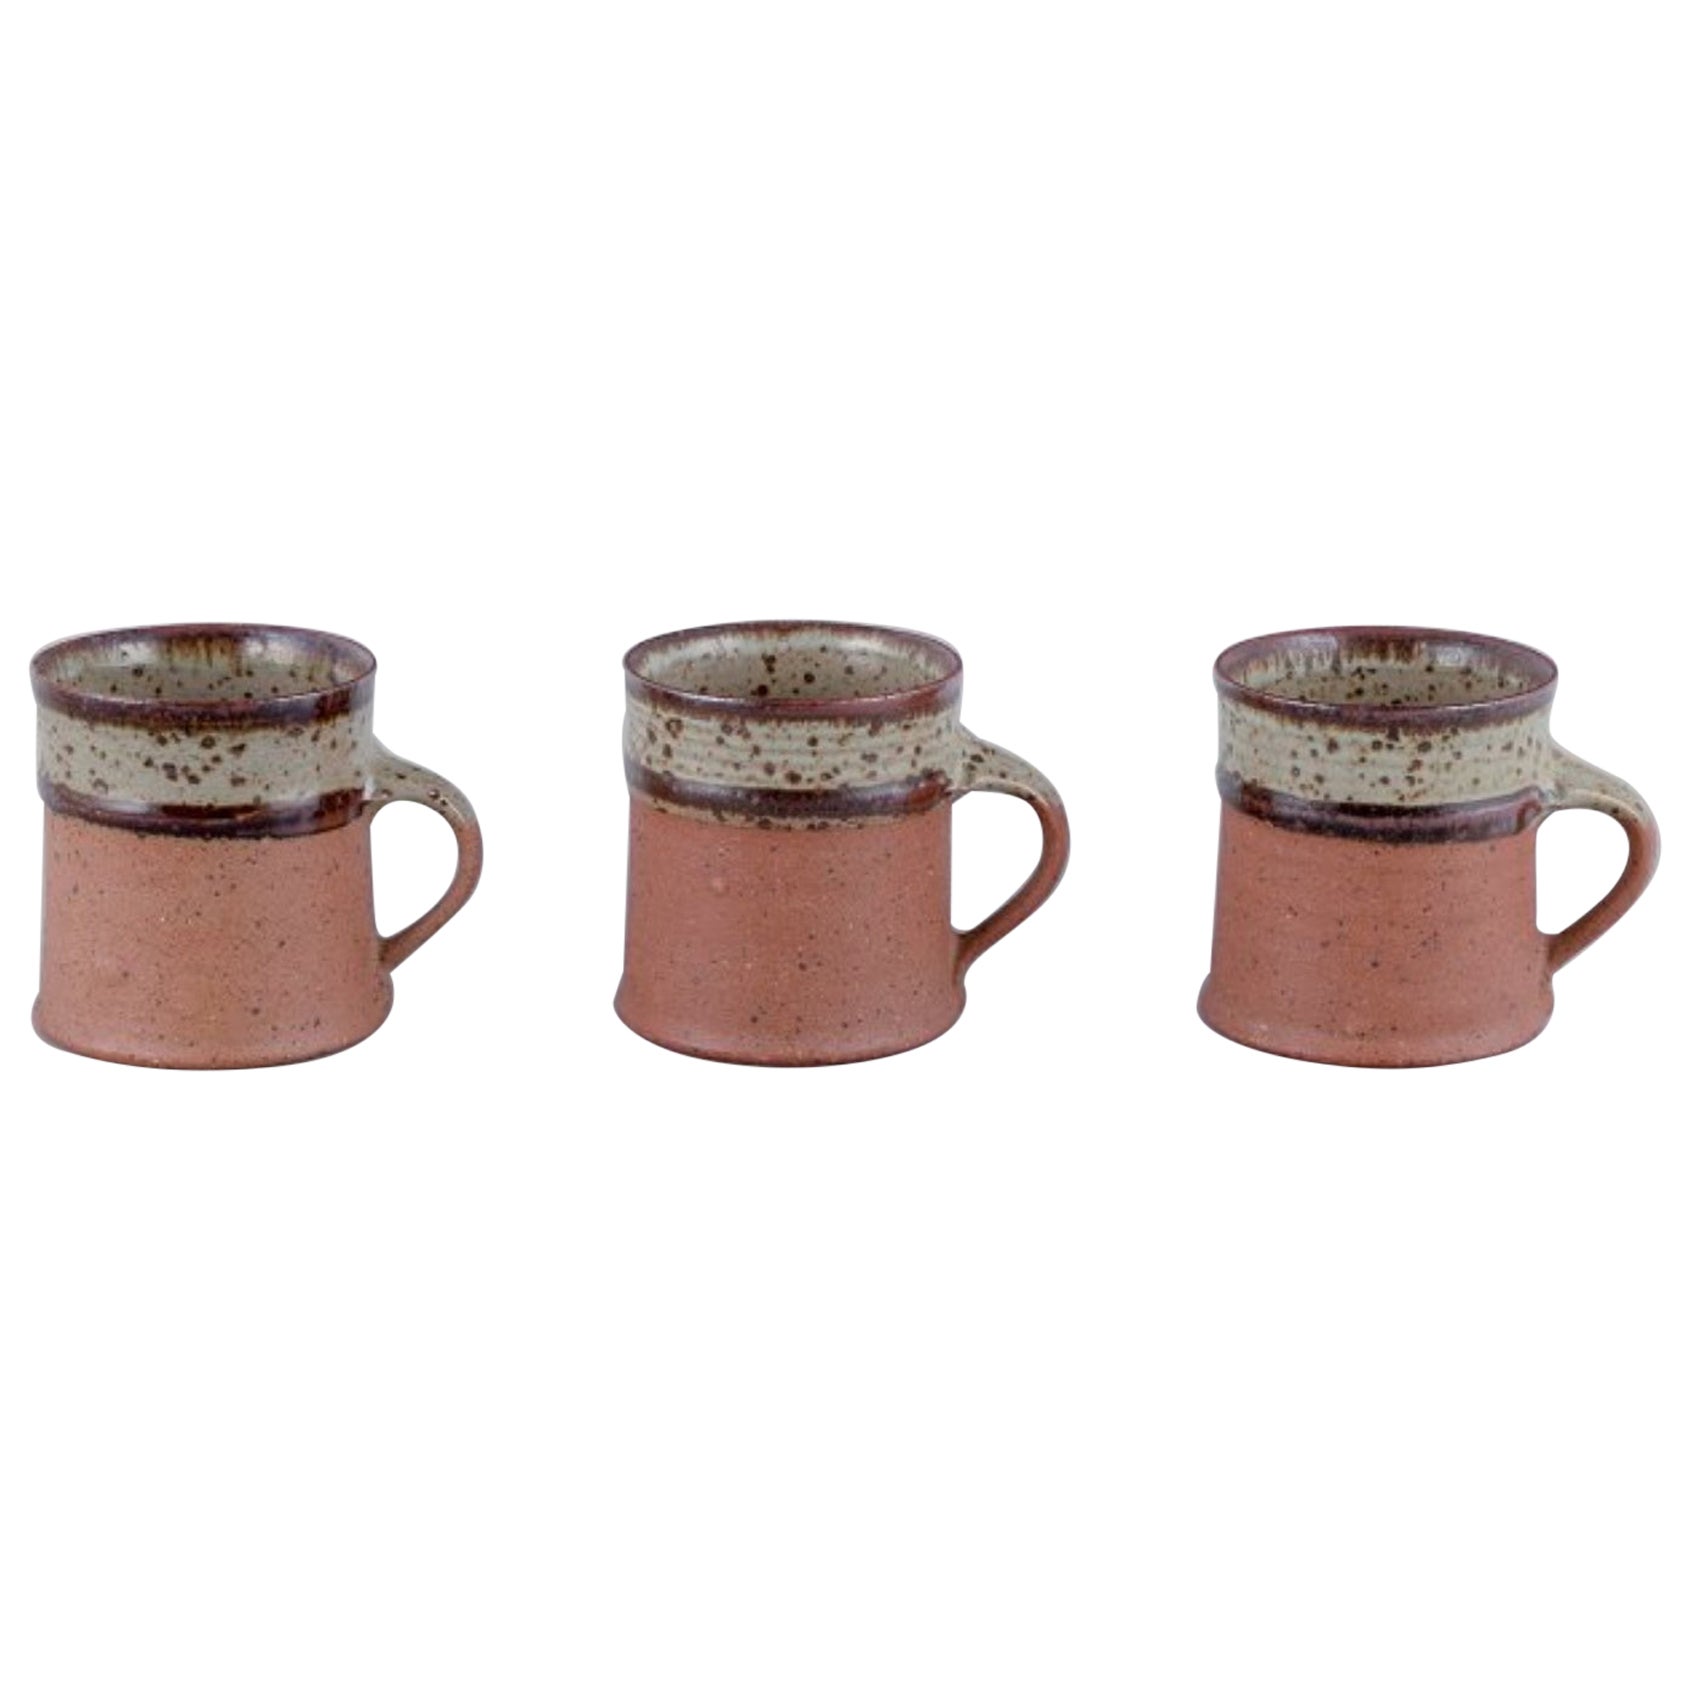 Nysted Ceramics, Danemark. Trois tasses en céramique dans les tons Brown.